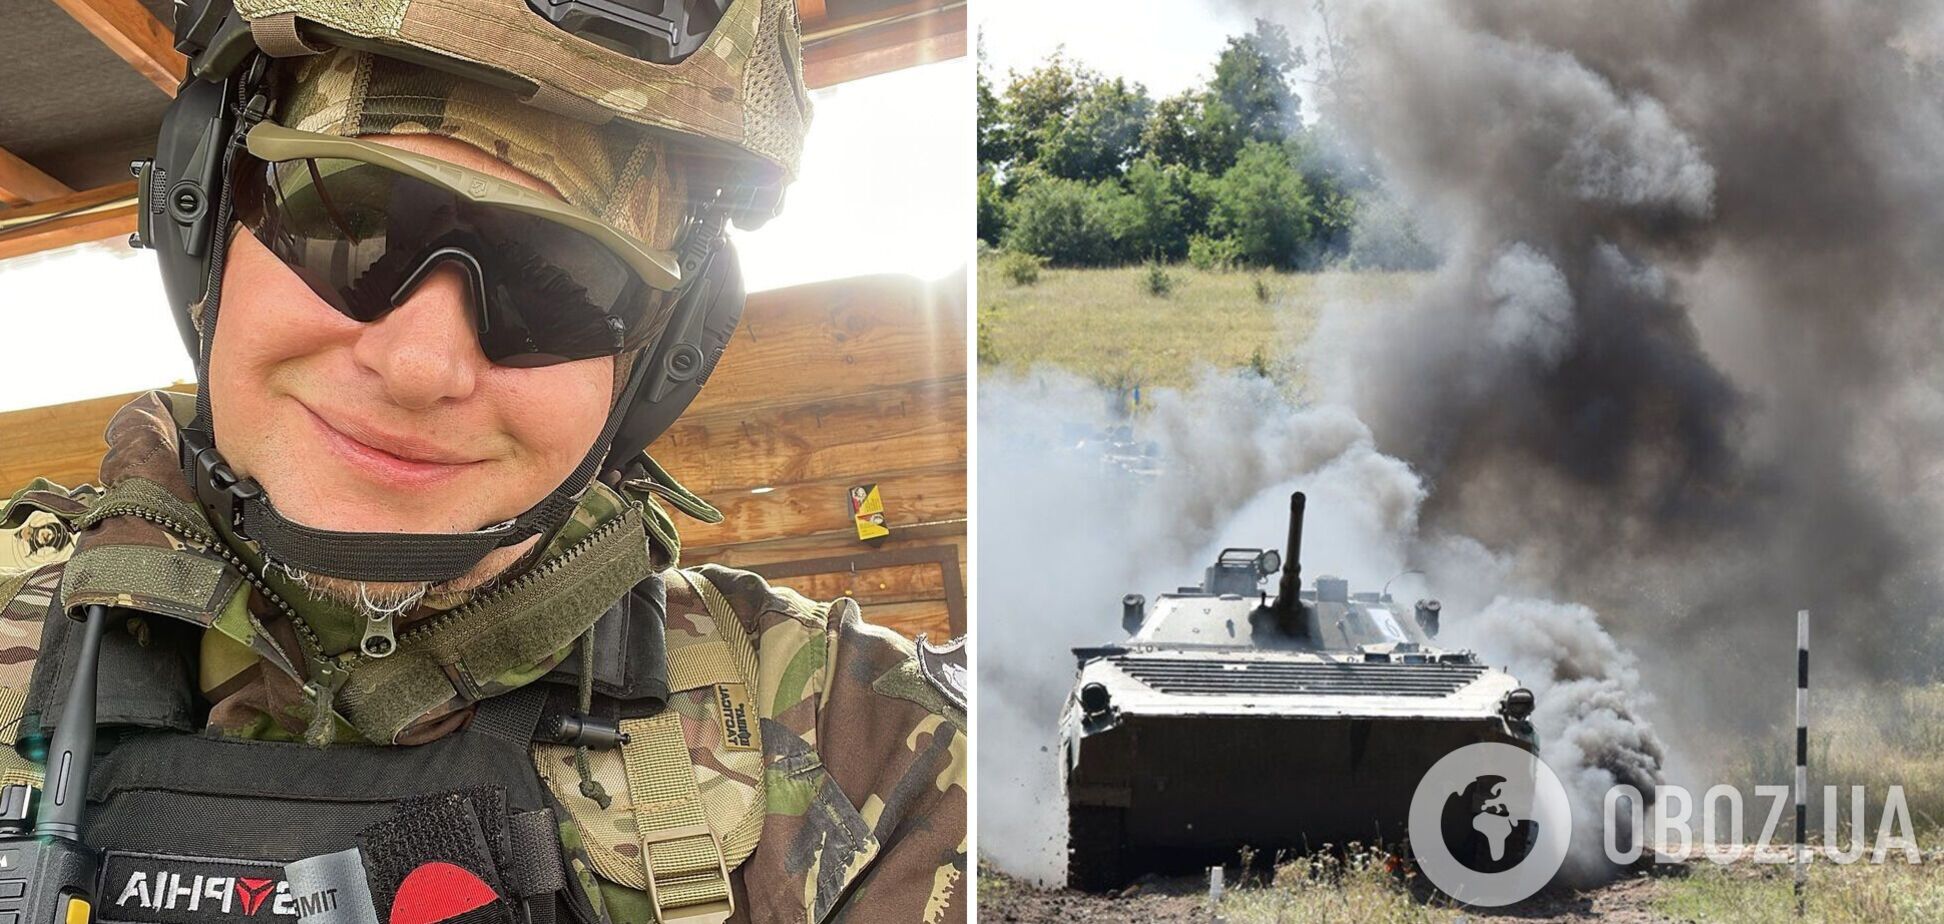 Хлывнюк, который защищает Украину: эта война надолго, с нами рядом живет сумасшедший сосед